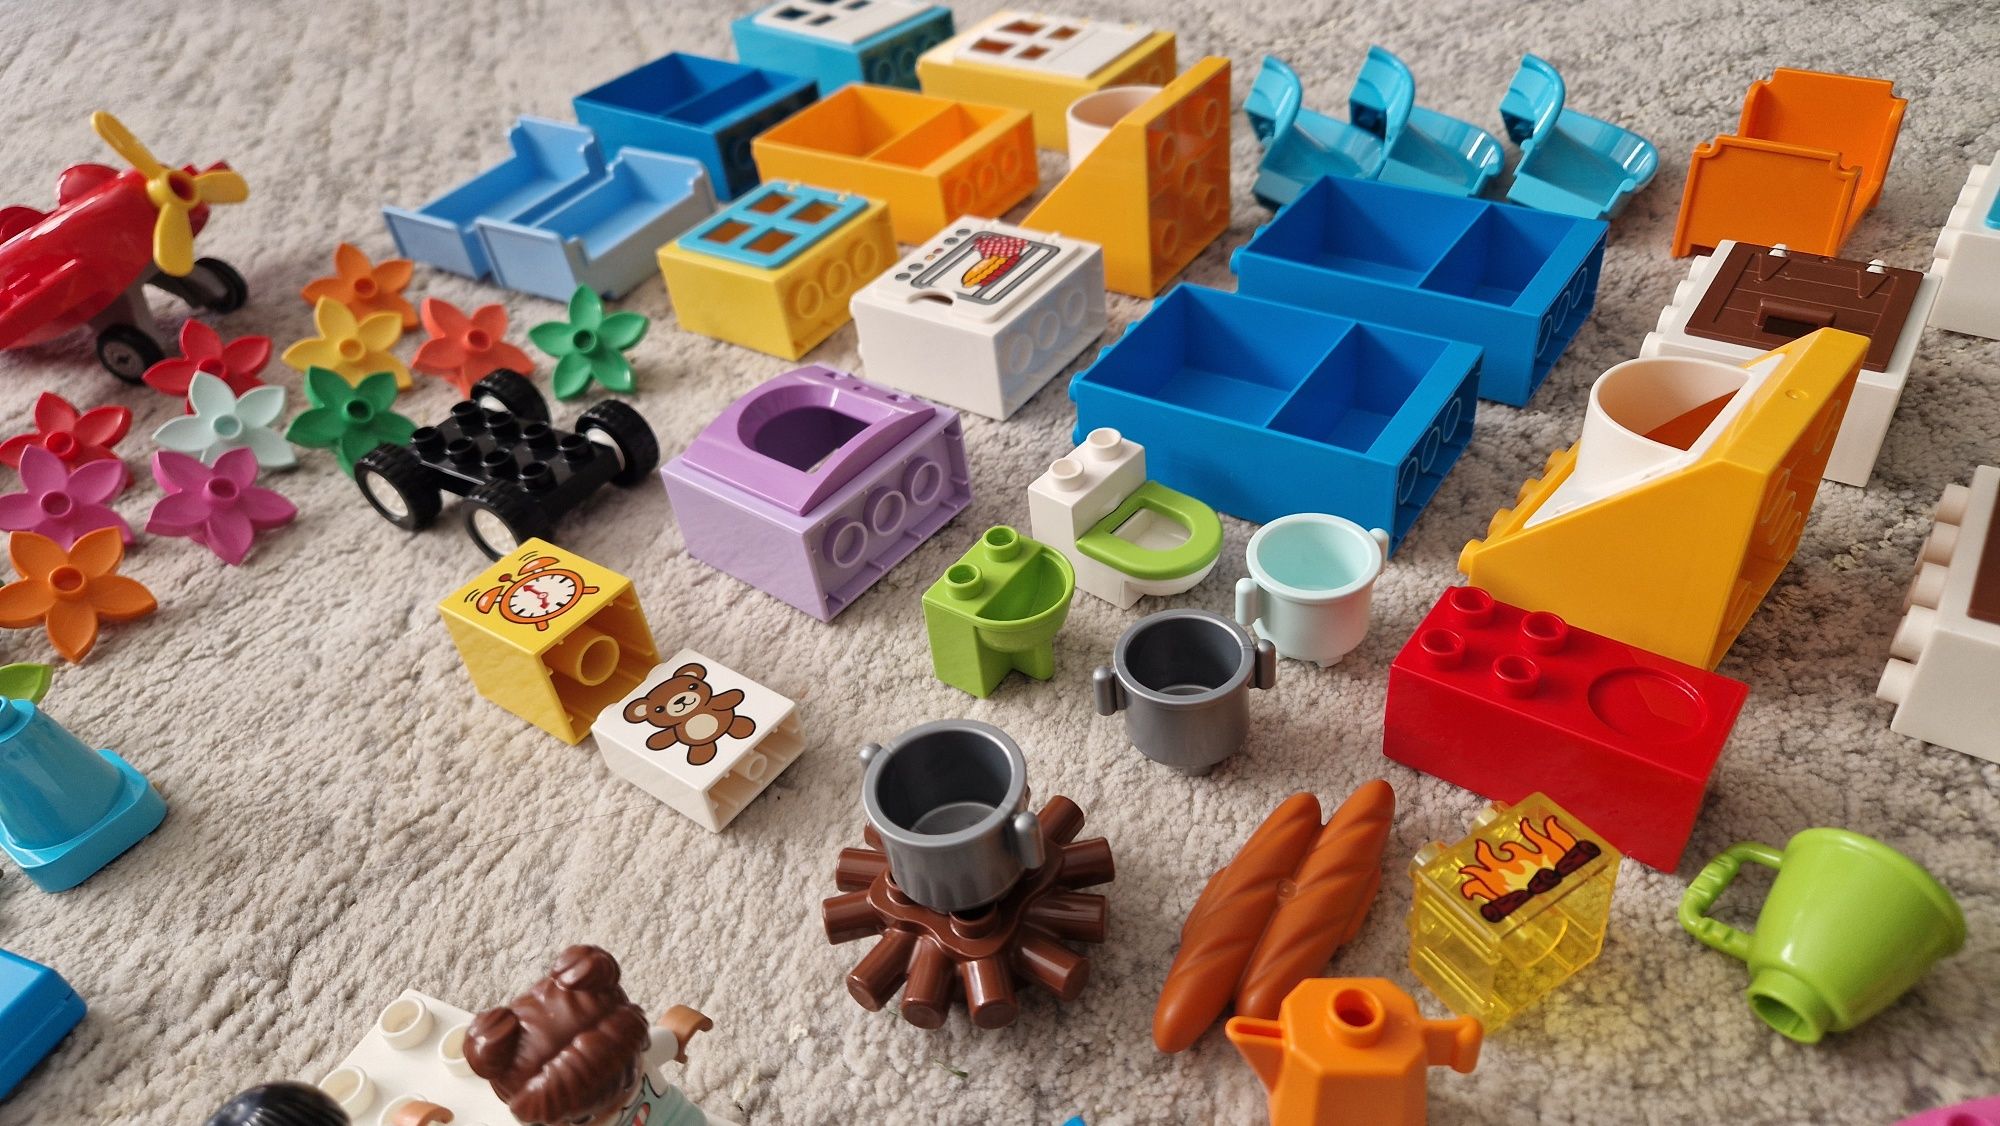 OGROMNY zestaw Lego Duplo, dwa pudełka, płytka, dom, zwierzęta